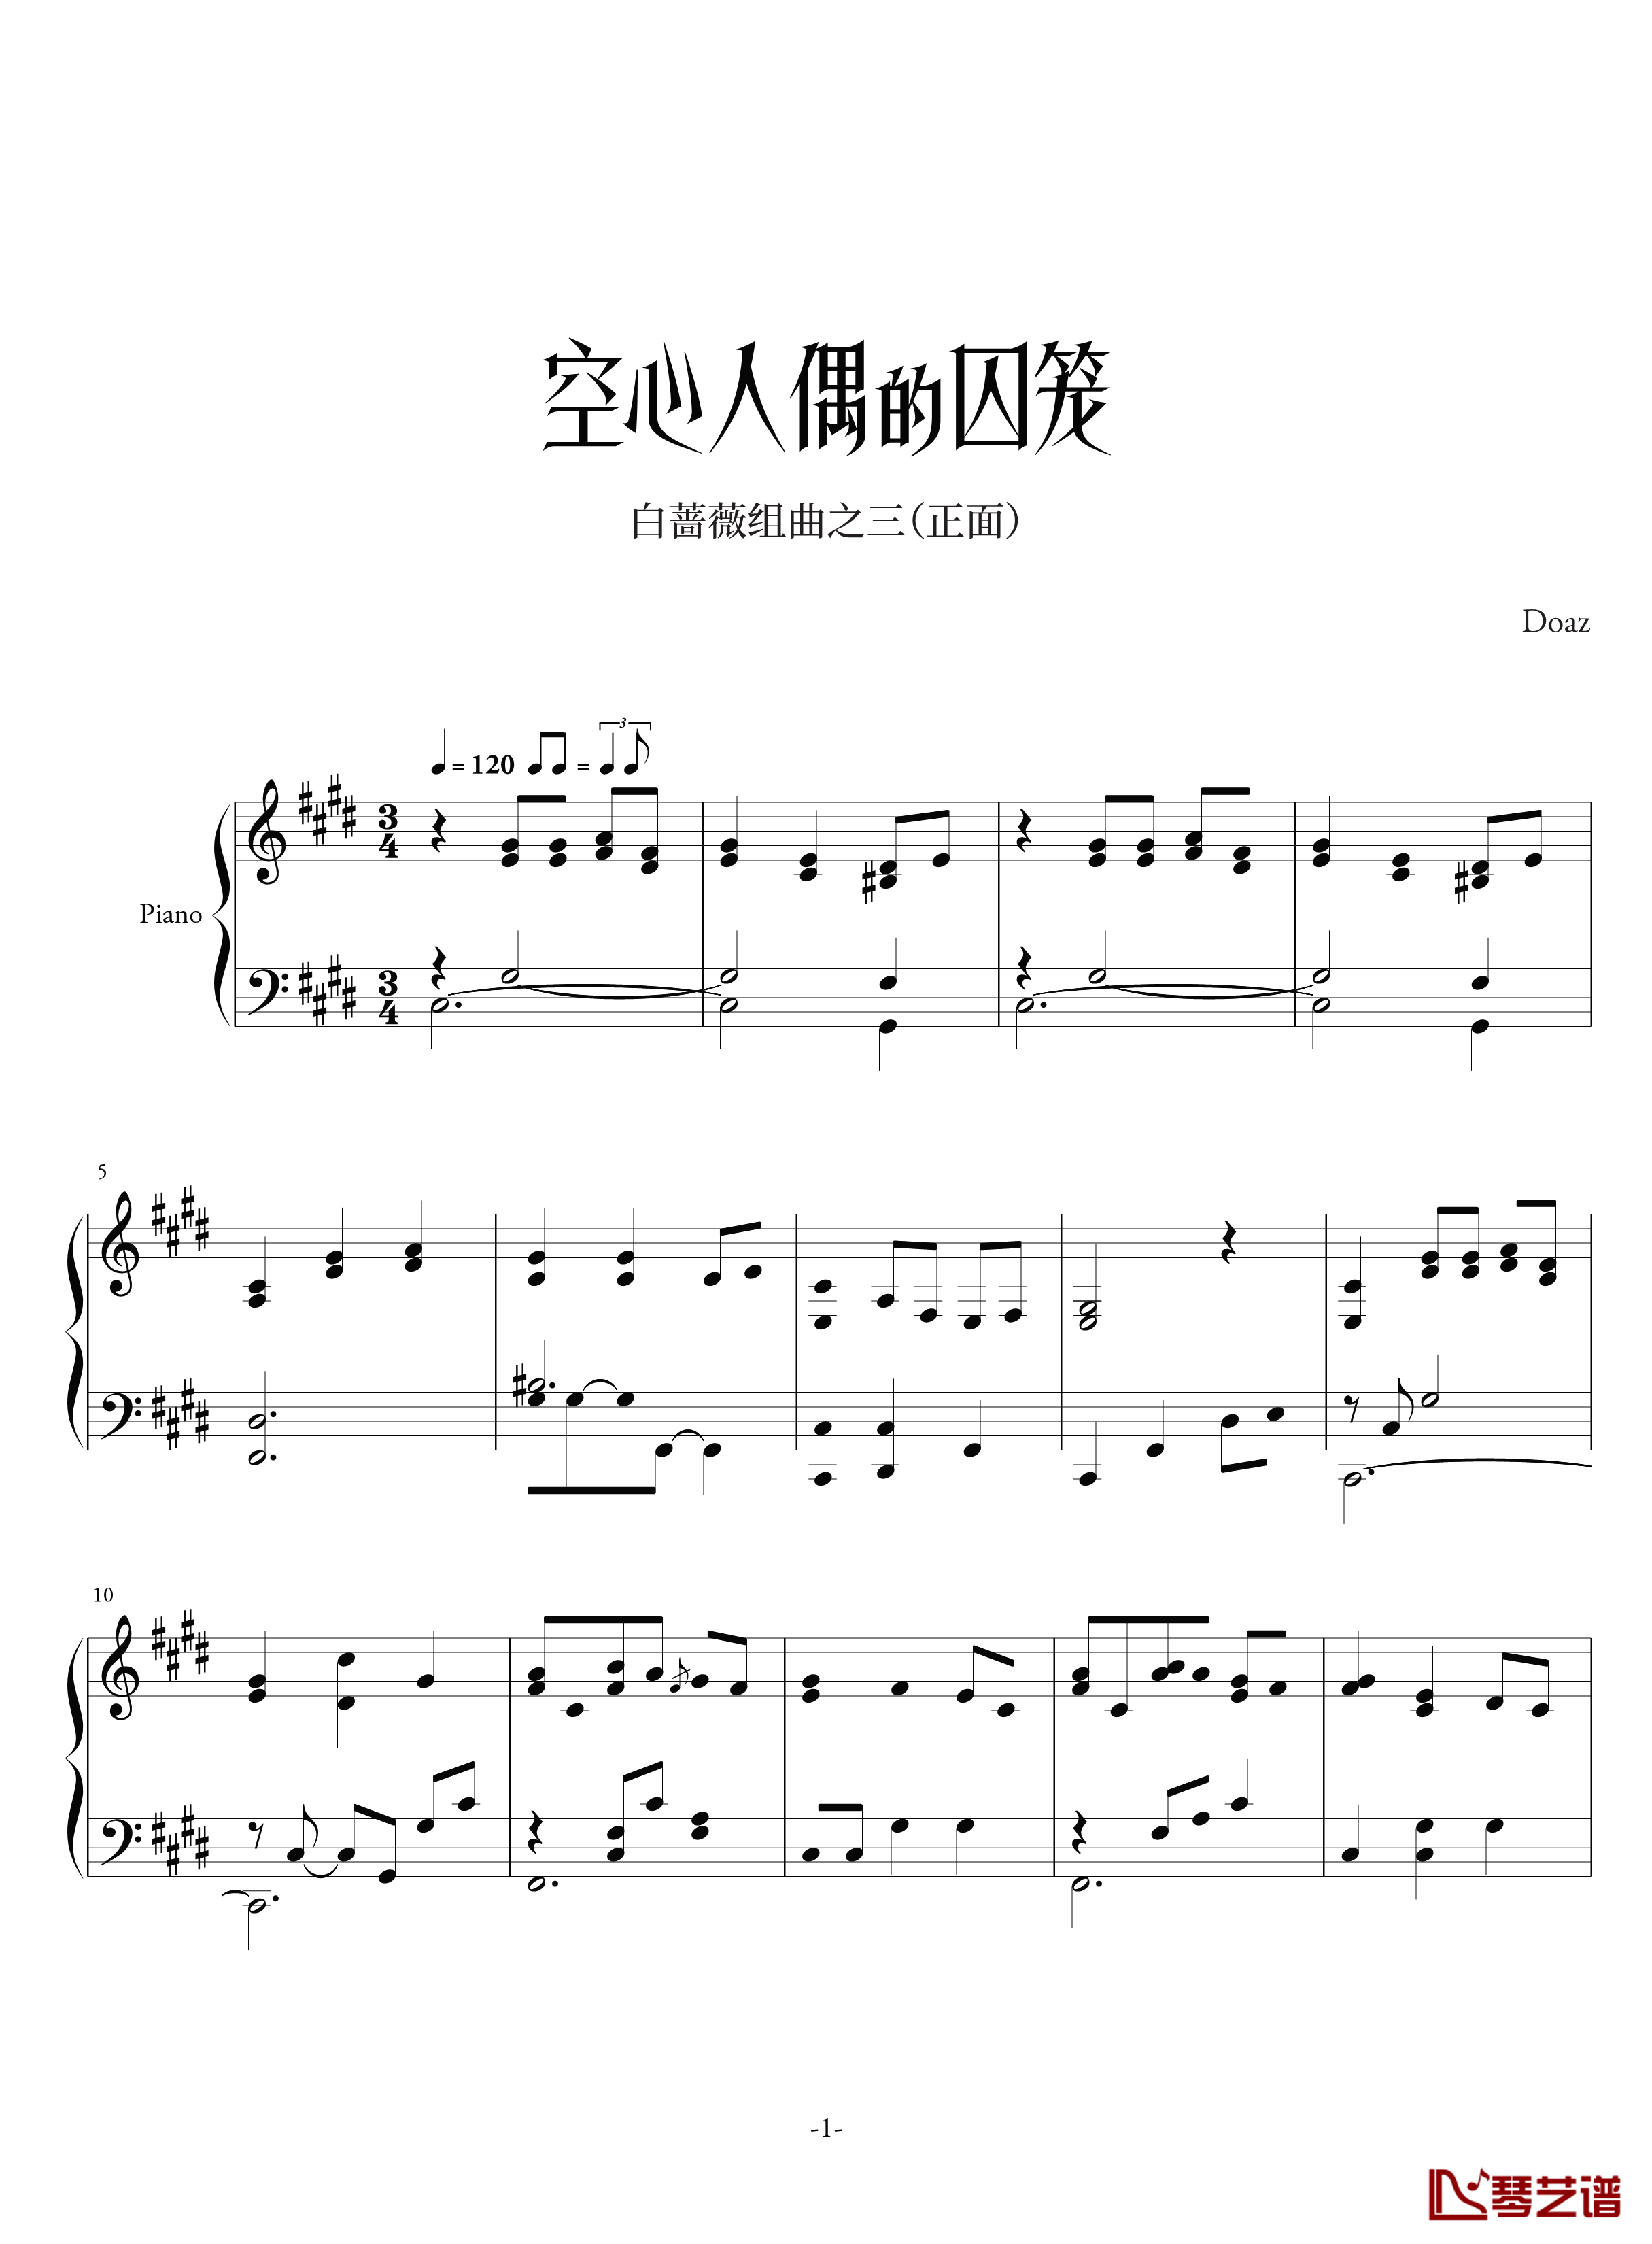 空心人偶的囚笼白蔷薇组曲⒊钢琴谱-正-aqtq3141